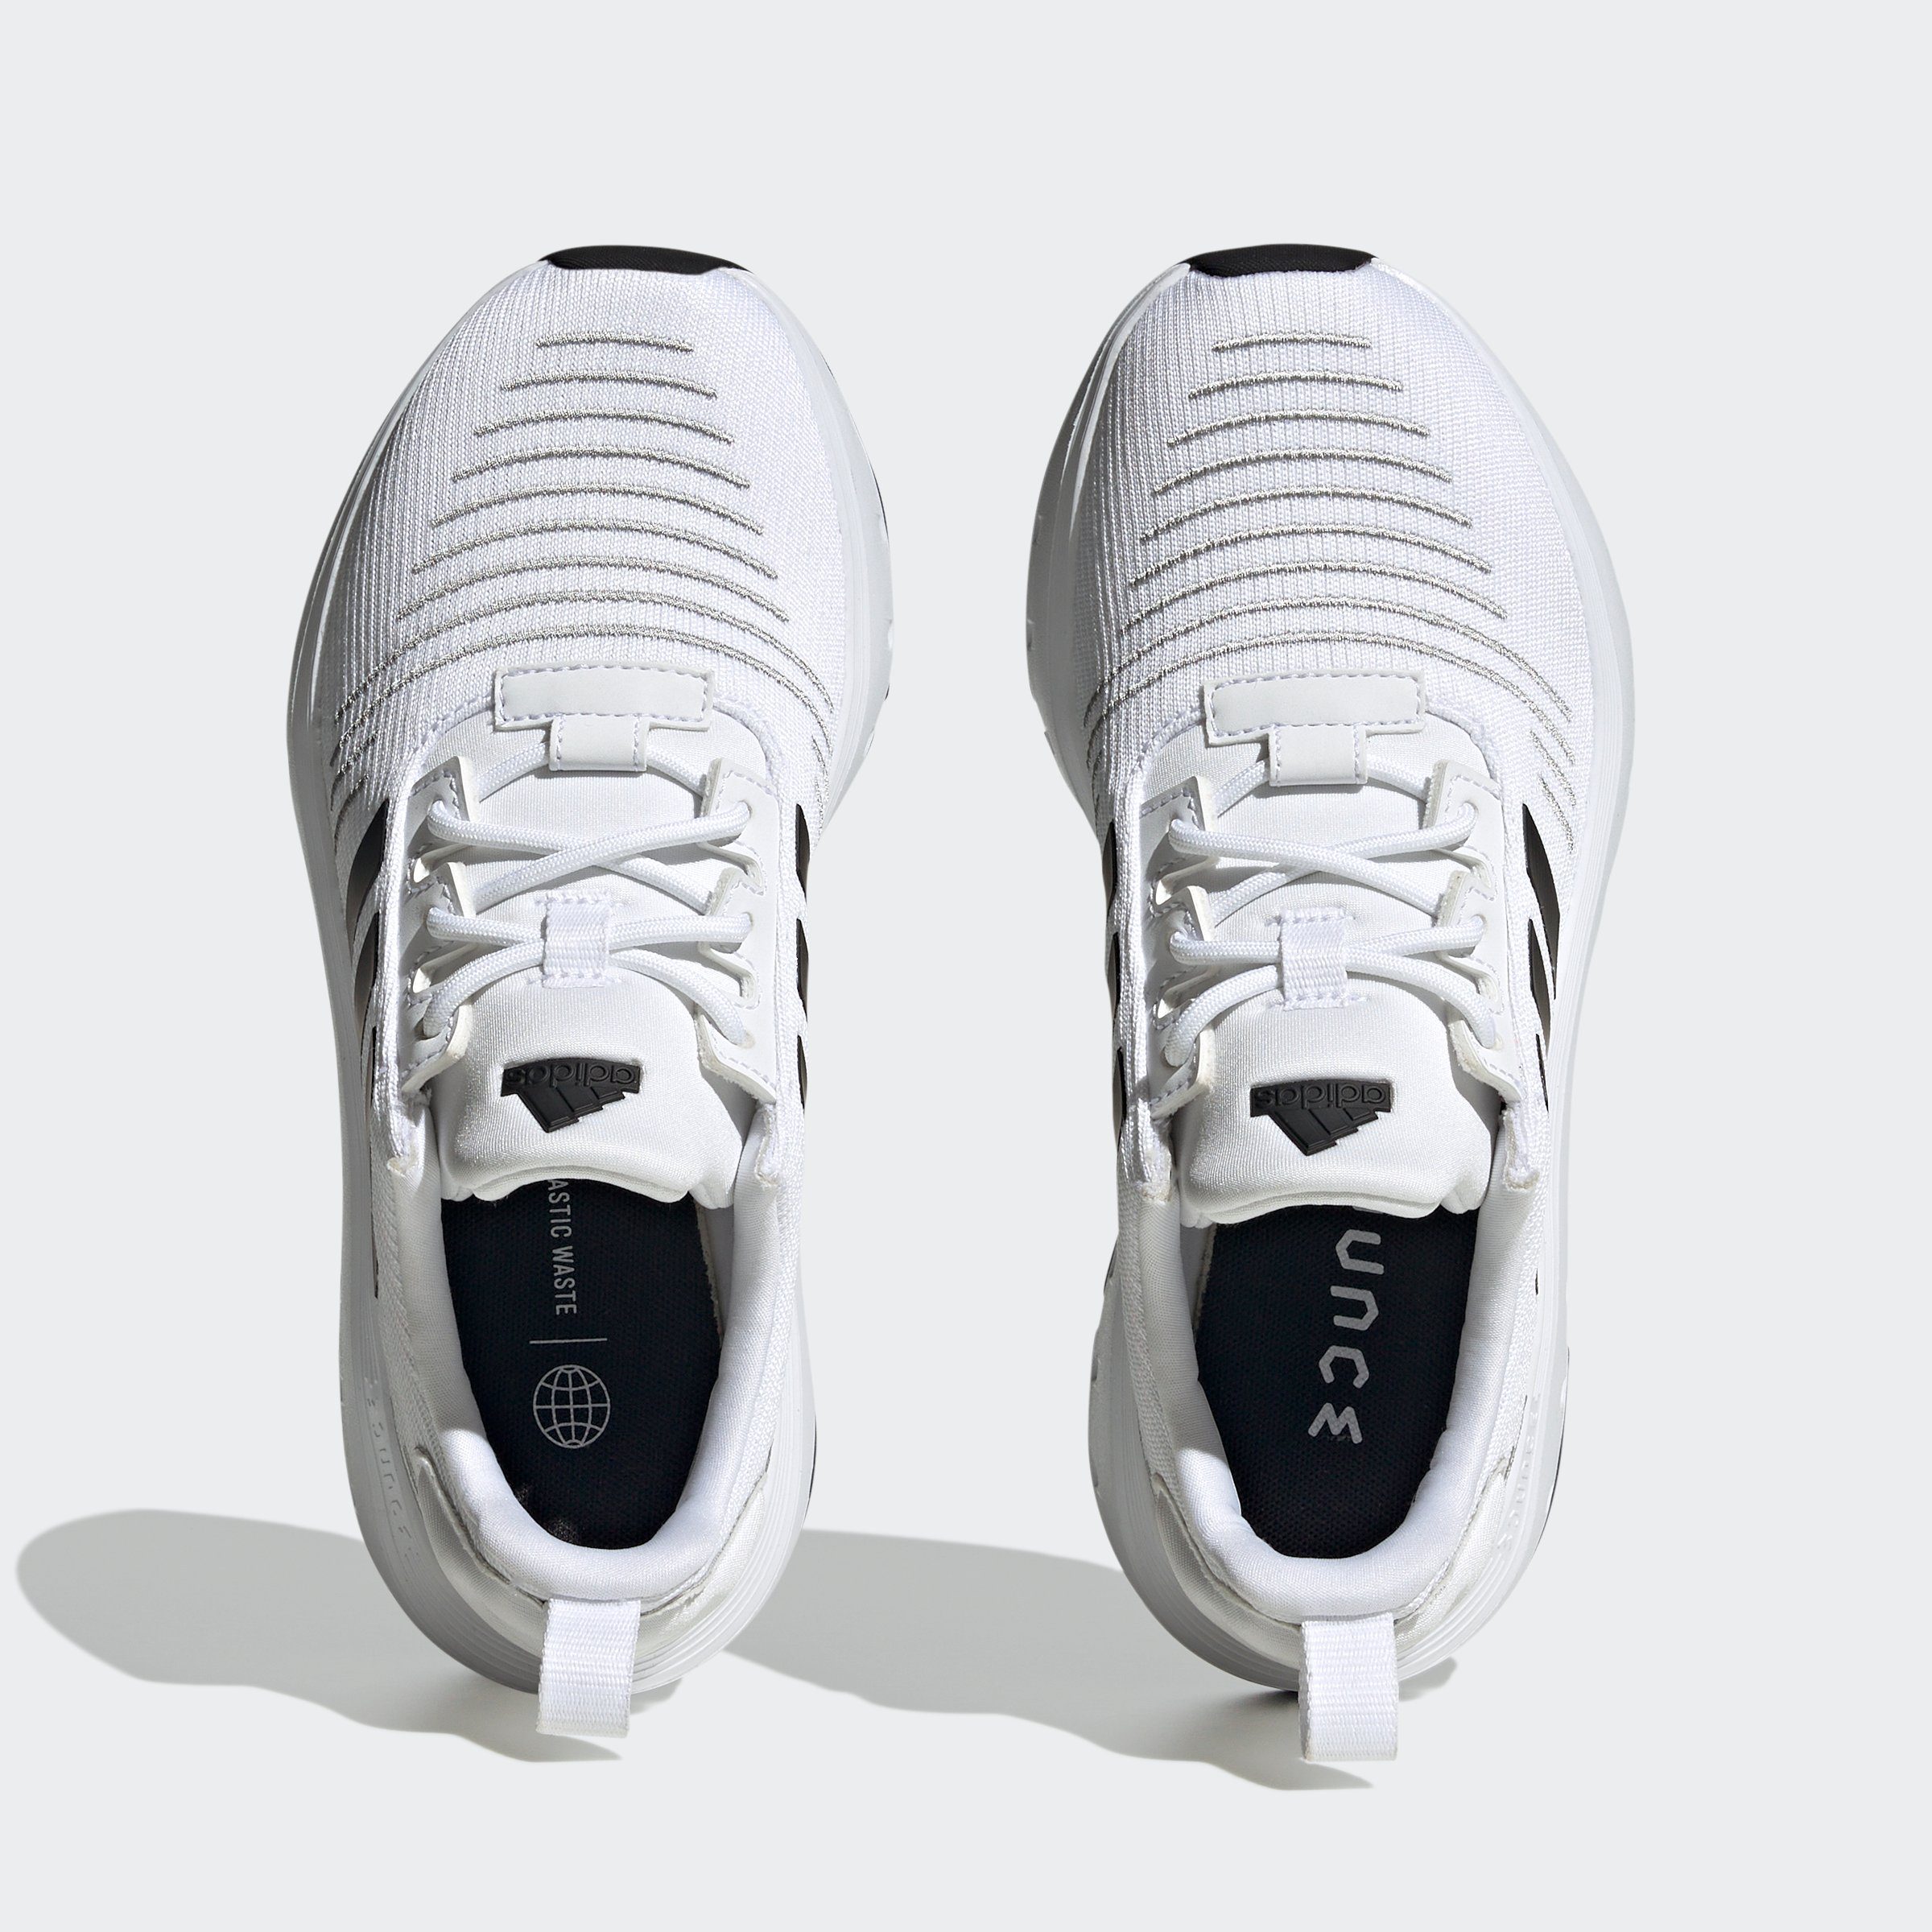 Cloud Two White KIDS Sportswear / Sneaker SWIFT Core Grey Black / adidas RUN